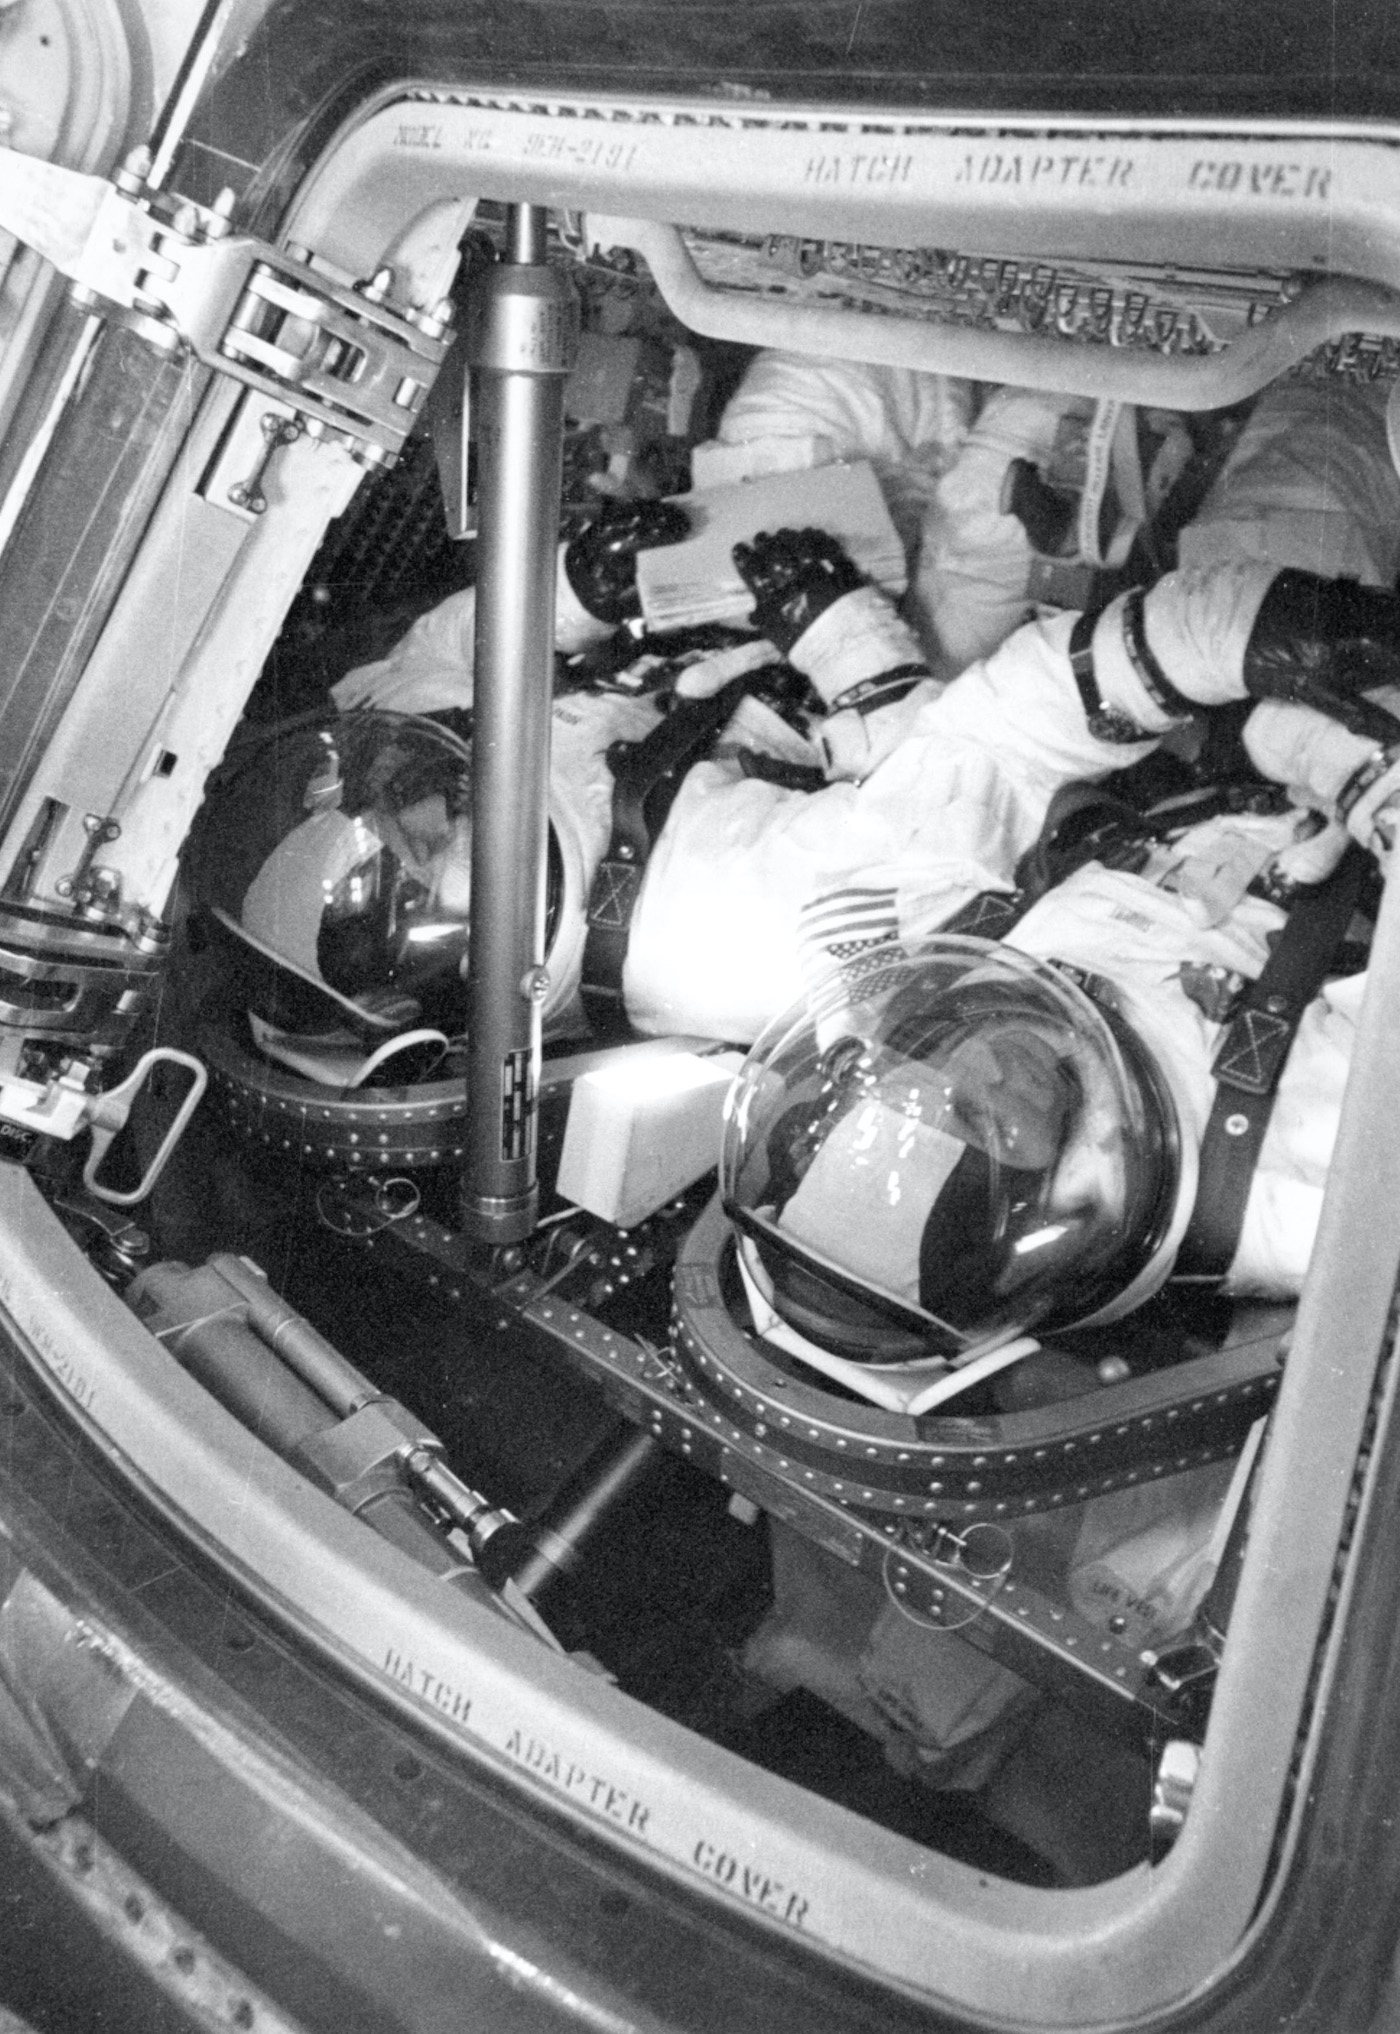 Speedmaster onboard Apollo 13 - 1